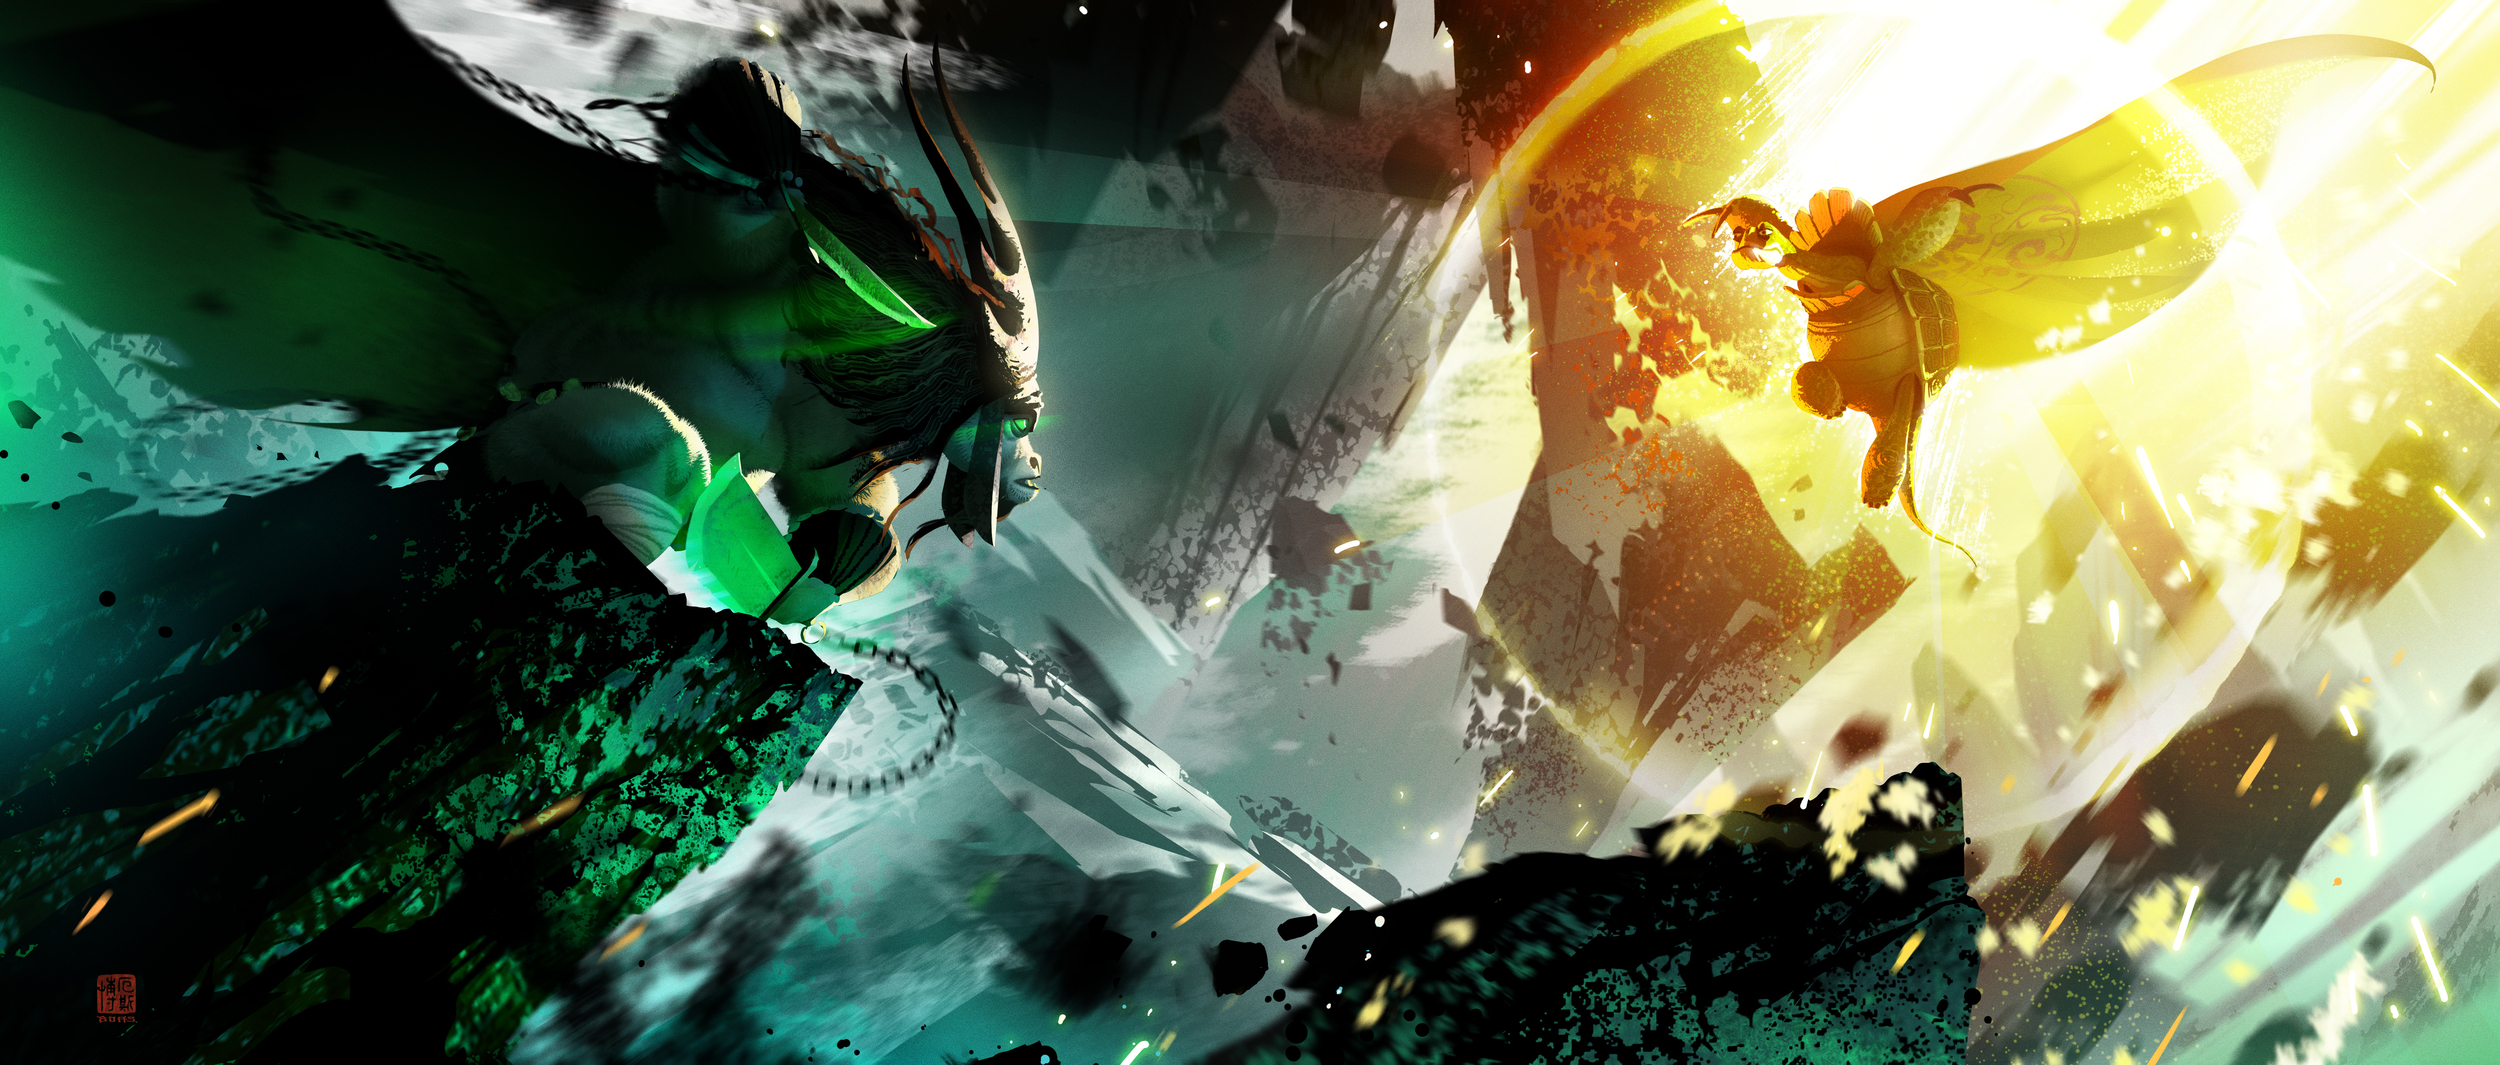  Kung Fu Panda 3, DWA Concept painting - Spirit Realm 